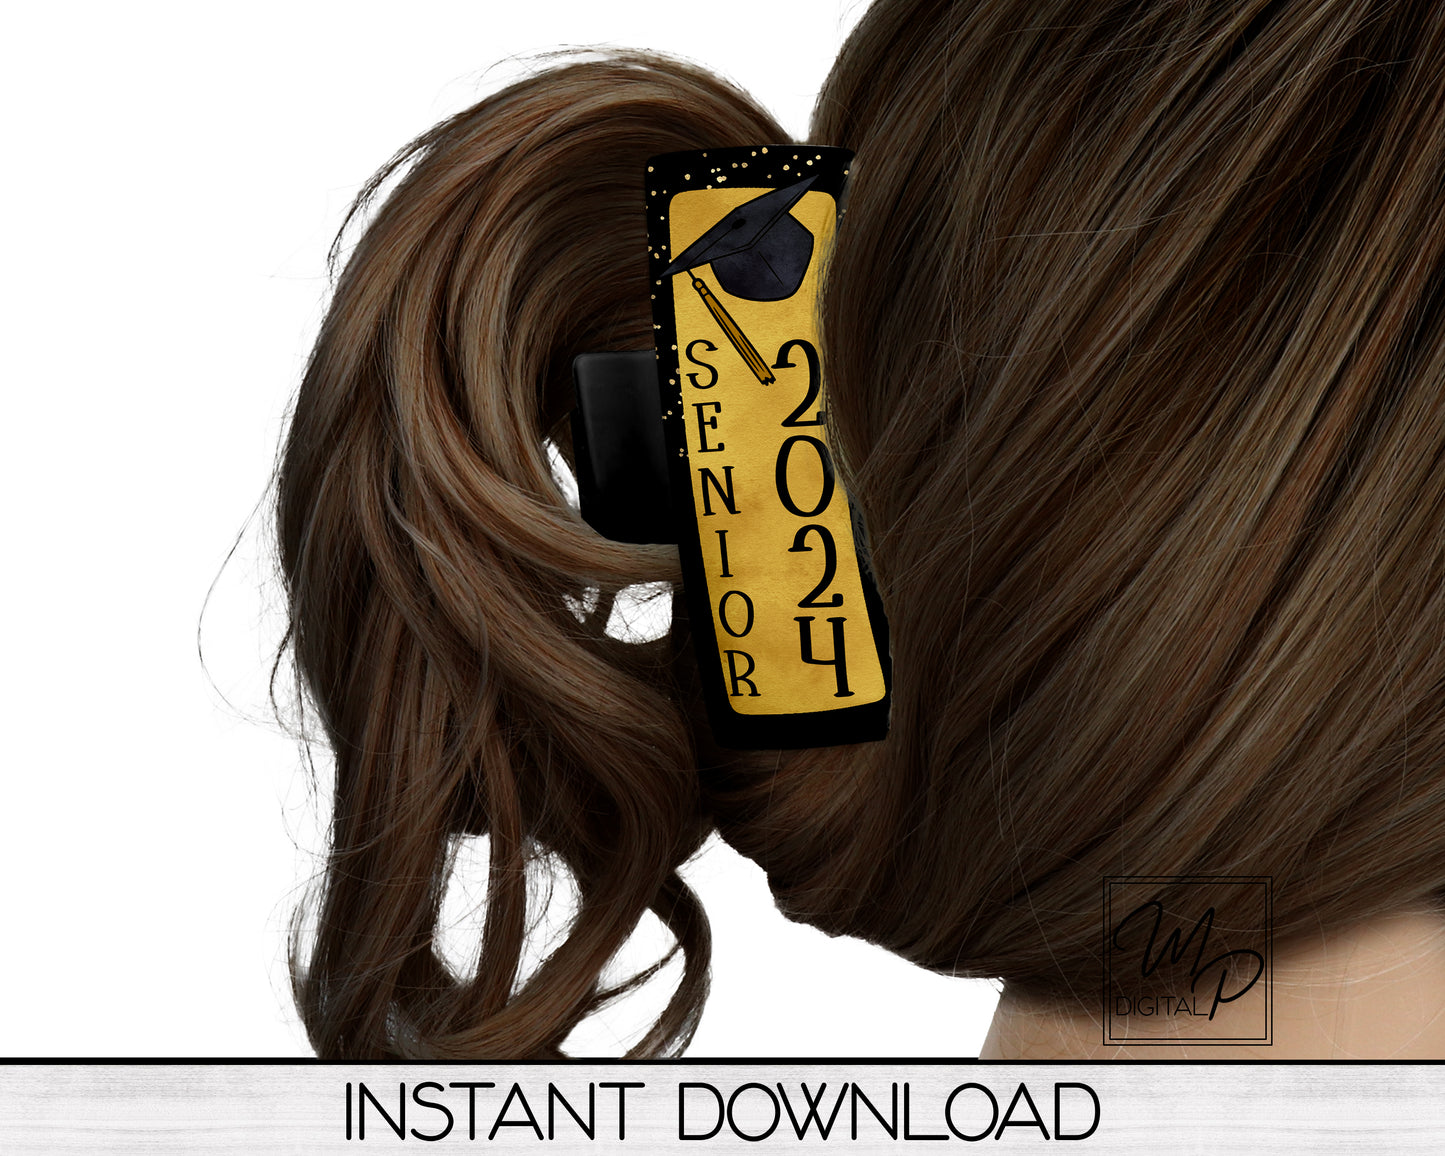 Gold and Black Senior 2024 Hair Clip PNG Sublimation Design, Digital Download